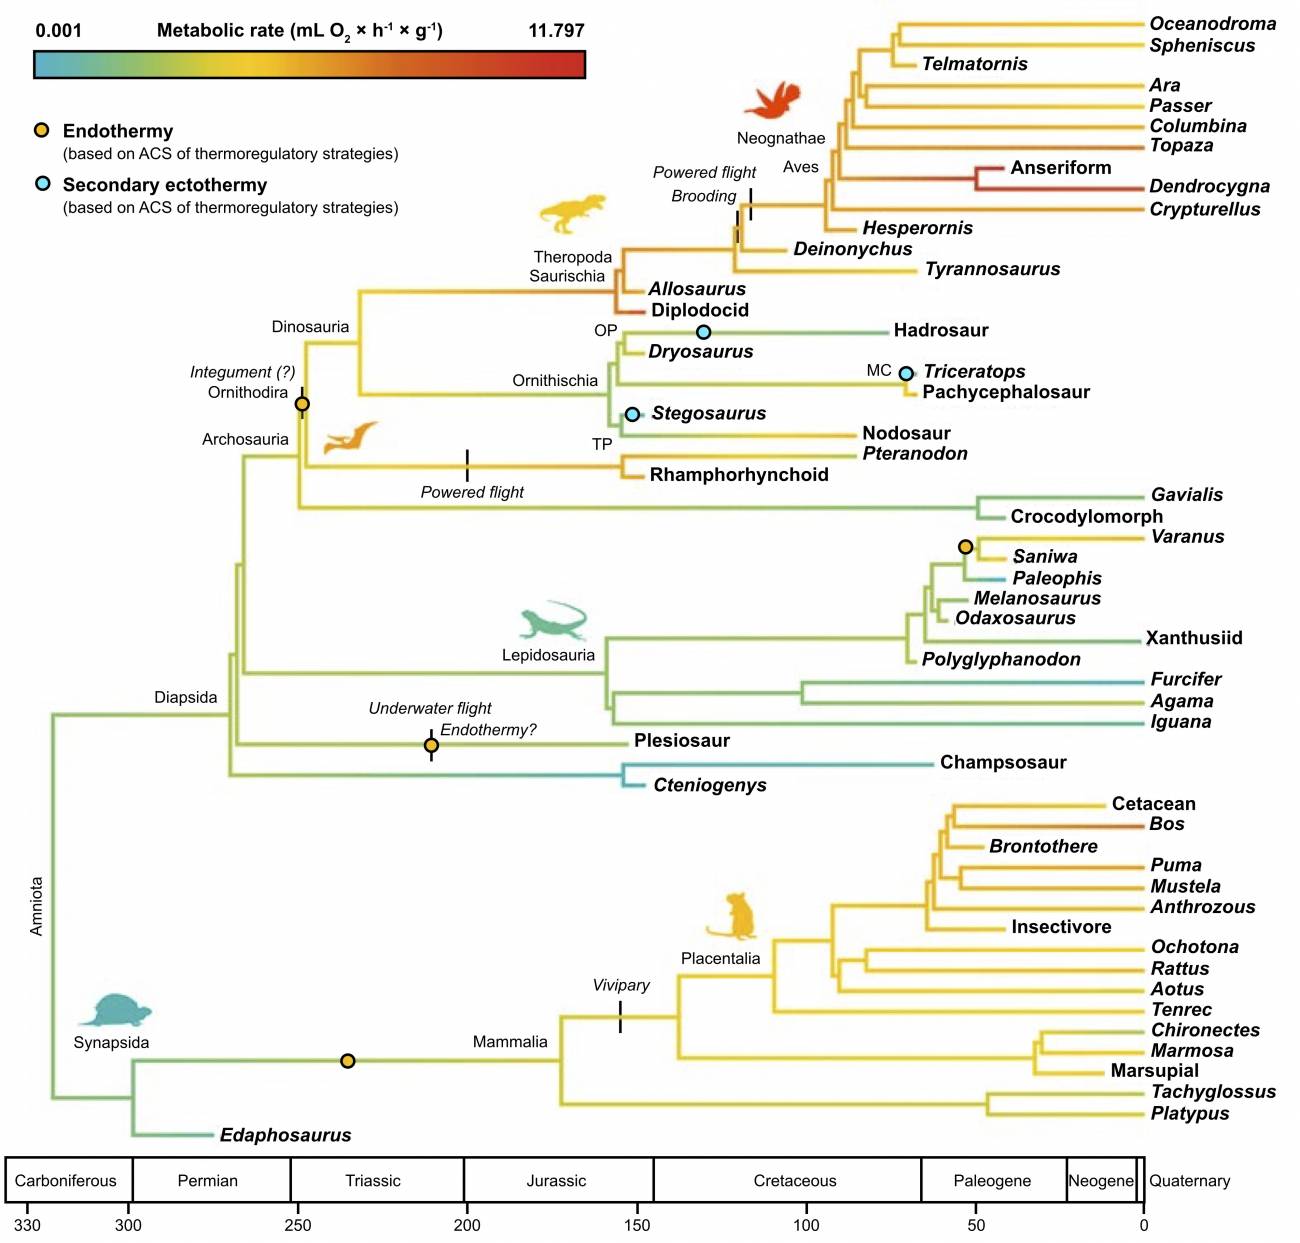 Filogenia de consenso calibrada en el tiempo de amniotas fósiles y modernos que muestra la evolución 393 de tasas metabólicas y estrategias térmicas